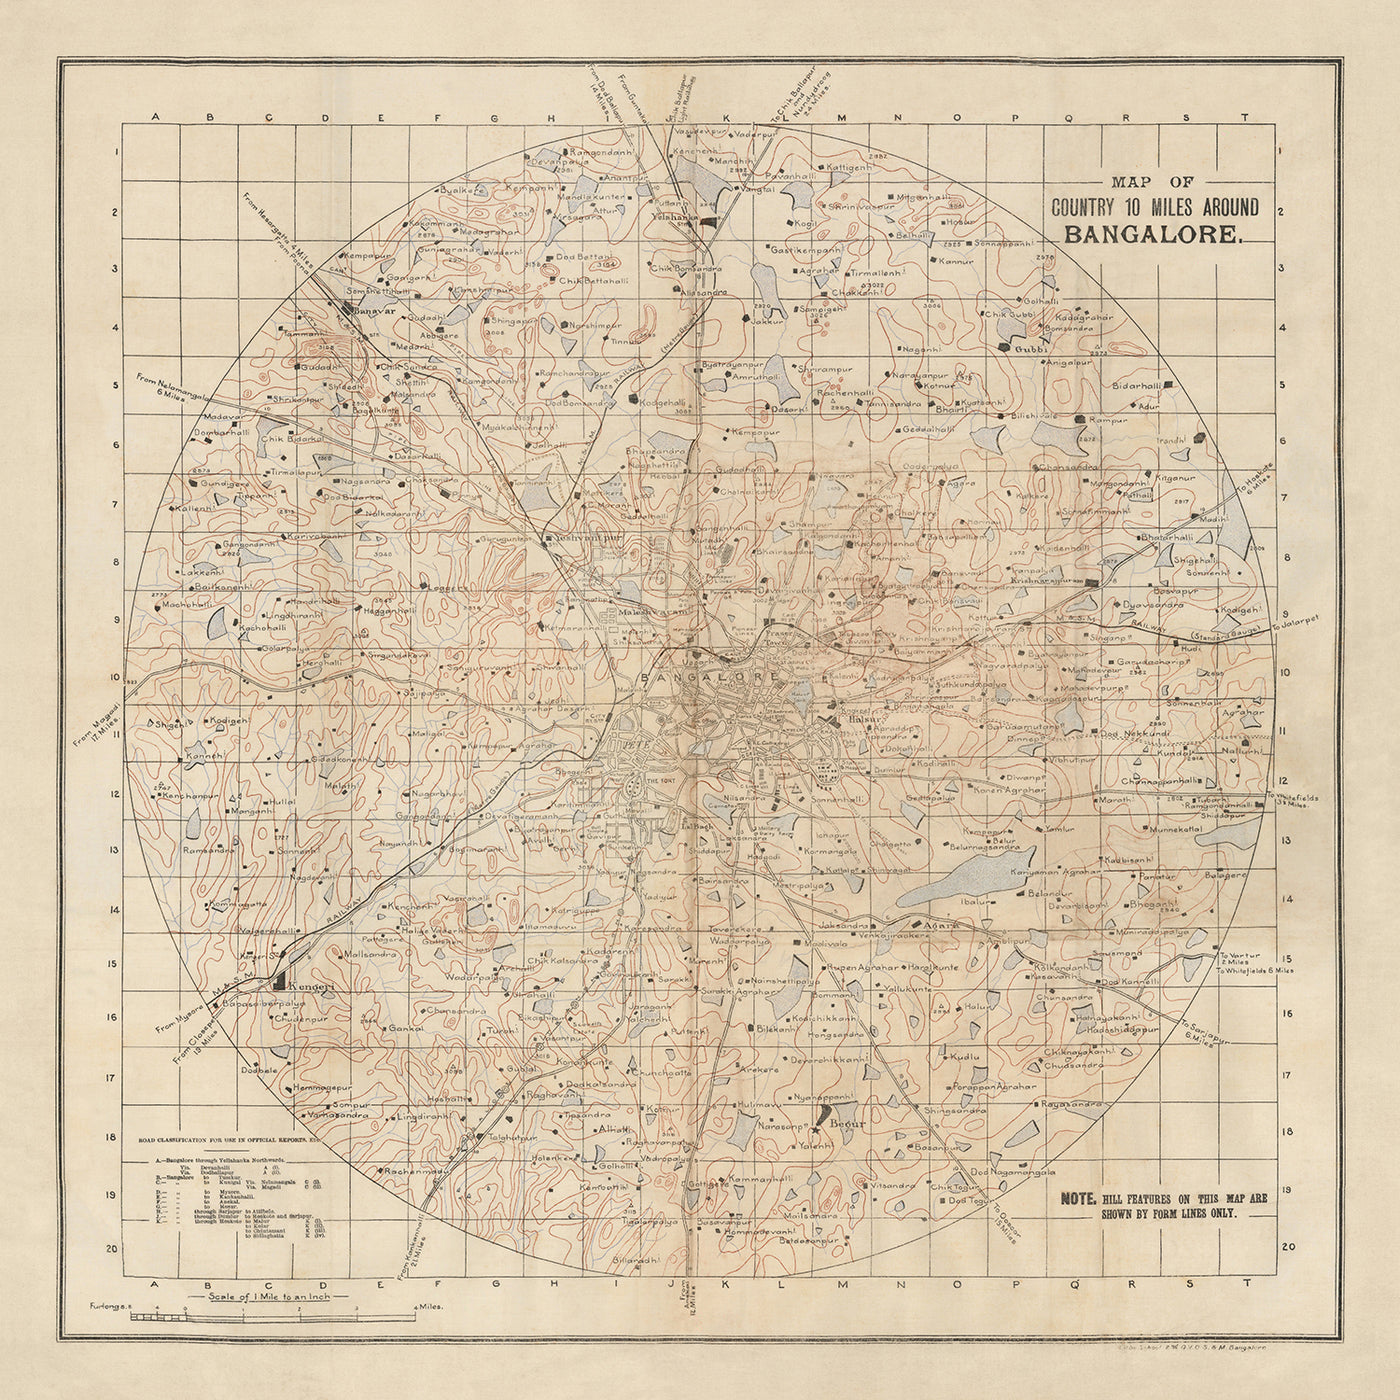 Alte Karte von Bengaluru von 1910: Bangalore City, Cantonment, Bannerghatta, Ulsoor Lake, Sankey Tank